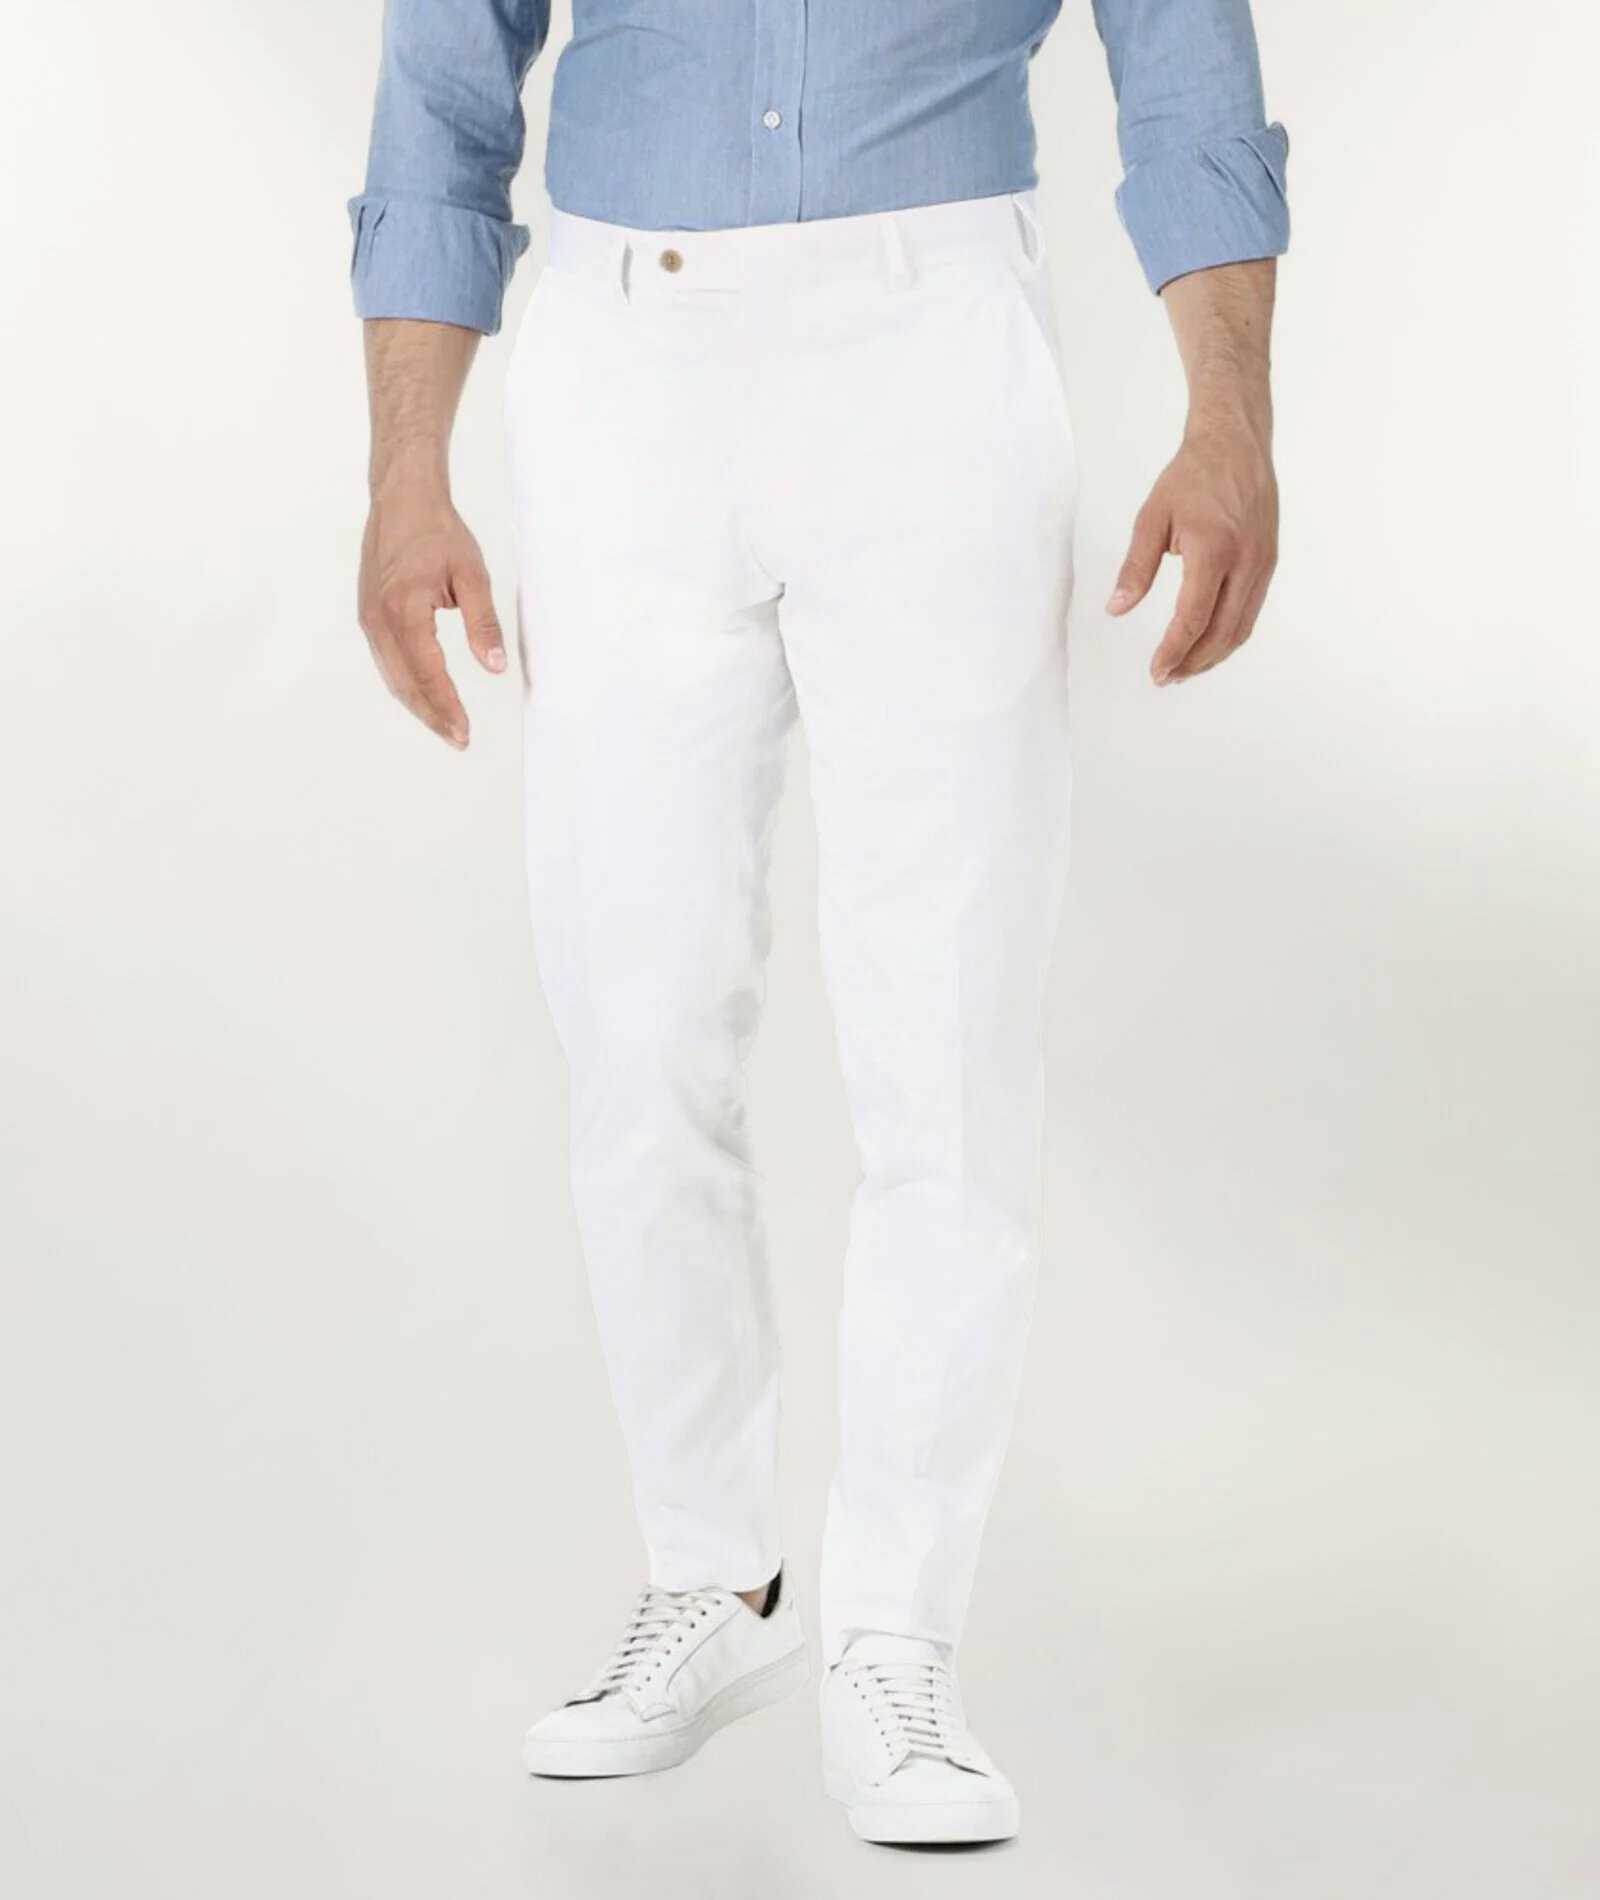 Paruri Black Slim Fit Cotton Pants | Slim fit cotton pants, Best mens pants,  Business casual shirts